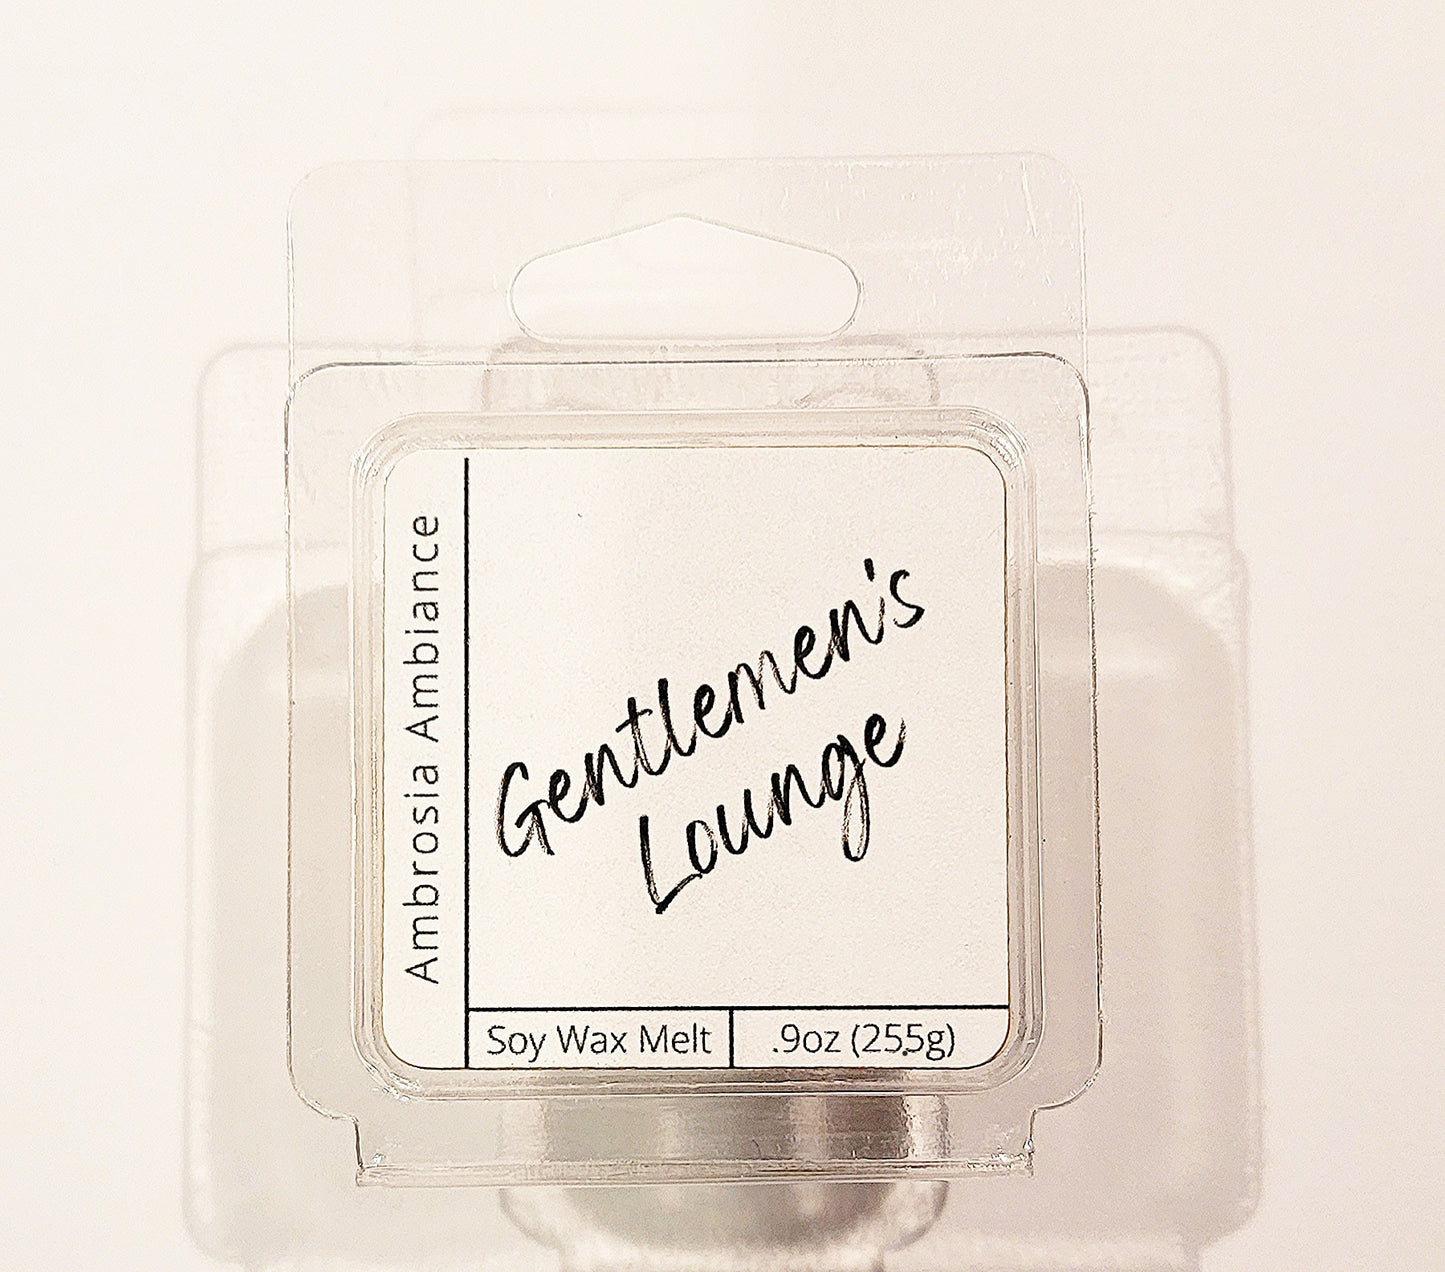 Gentlemen's Lounge | Soy Wax Melt